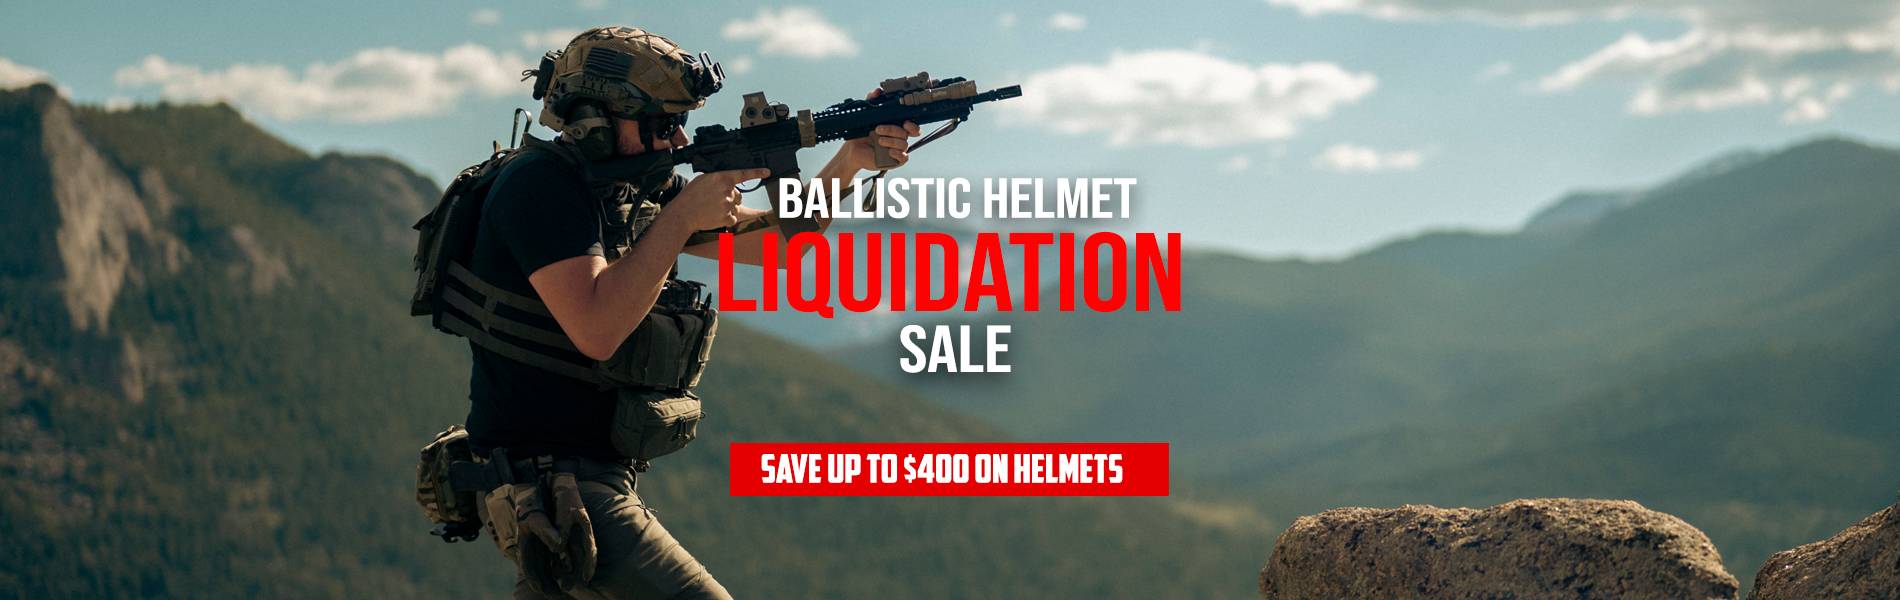 Ballistic Helmet Liquidation Sale